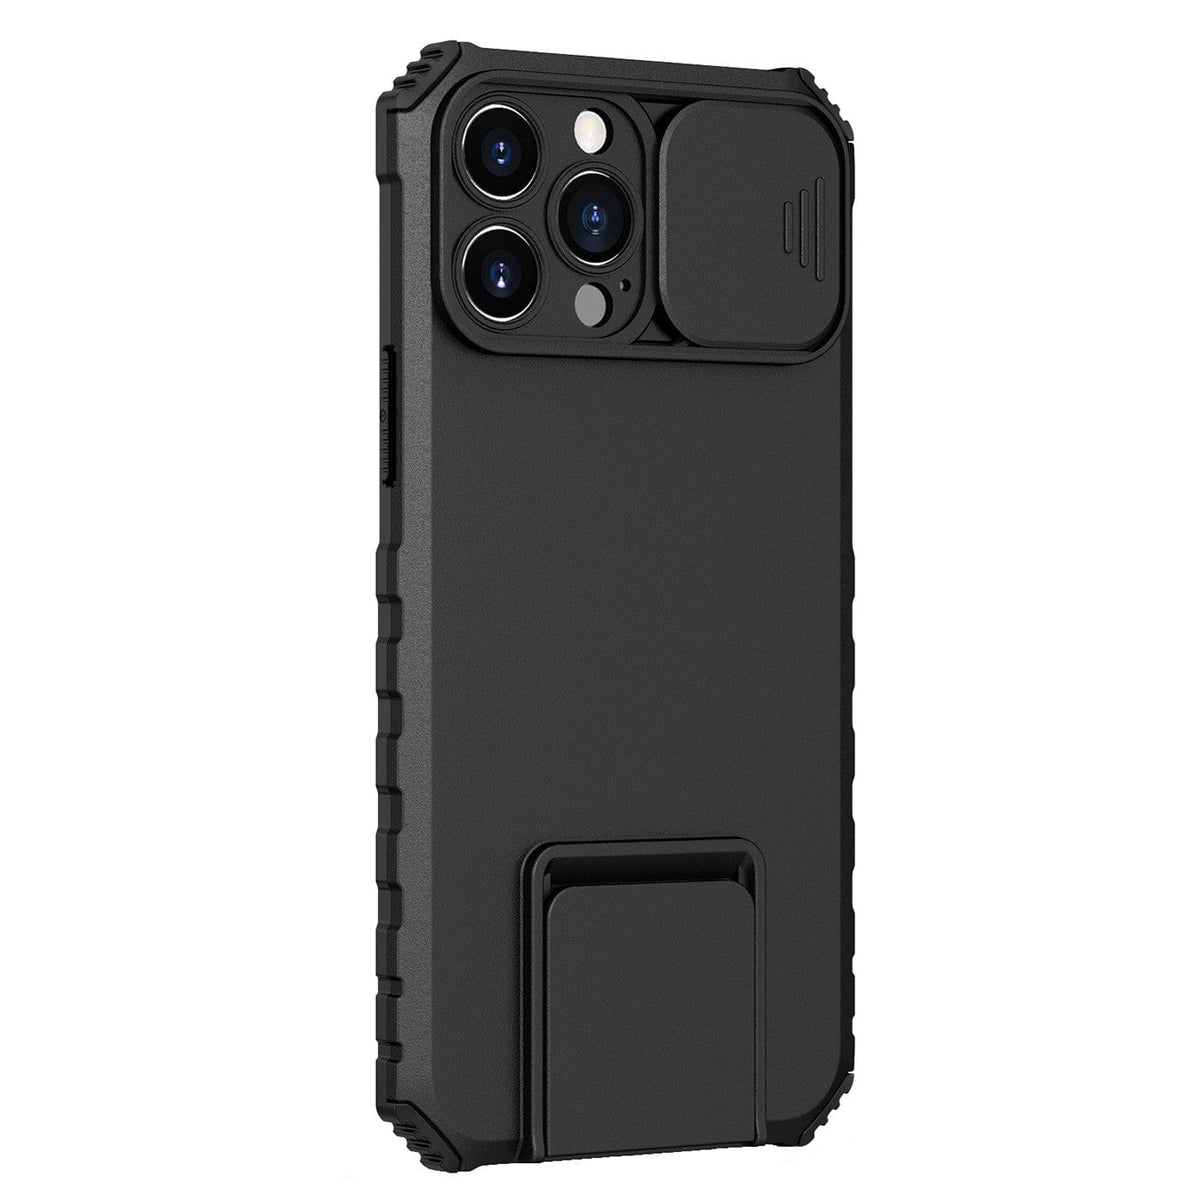 Husa Defender cu Stand pentru iPhone 11 Pro, Negru, Suport reglabil, Antisoc, Protectie glisanta pentru camera